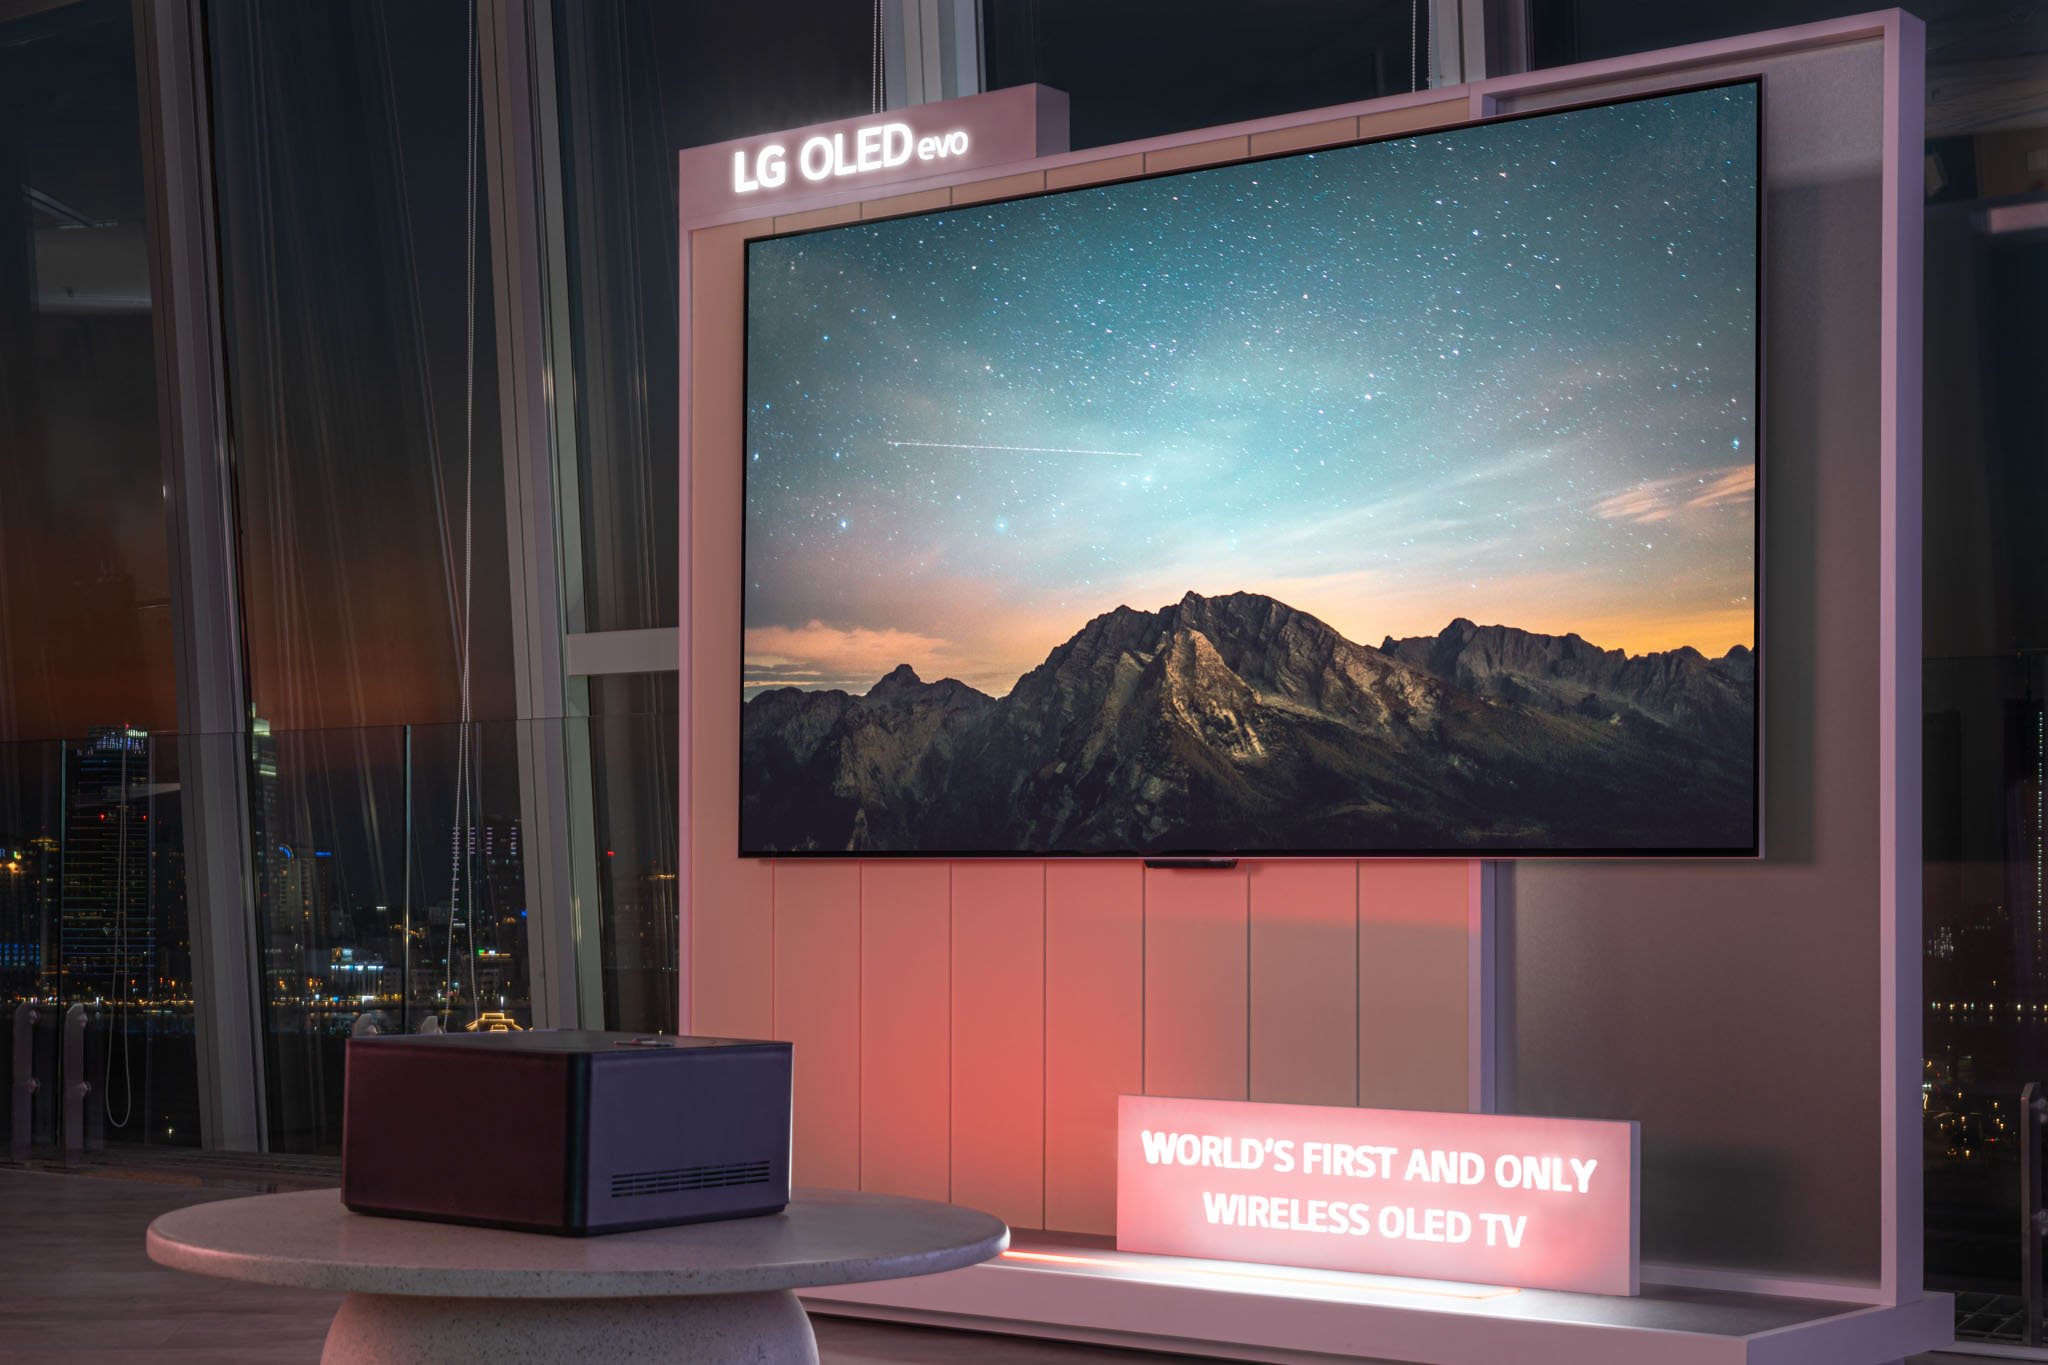 LG ra mắt TV không dây LG OLED evo M4: độ phân giải 4K, sáng hơn, nâng cấp hình ảnh mạnh hơn nhờ AI